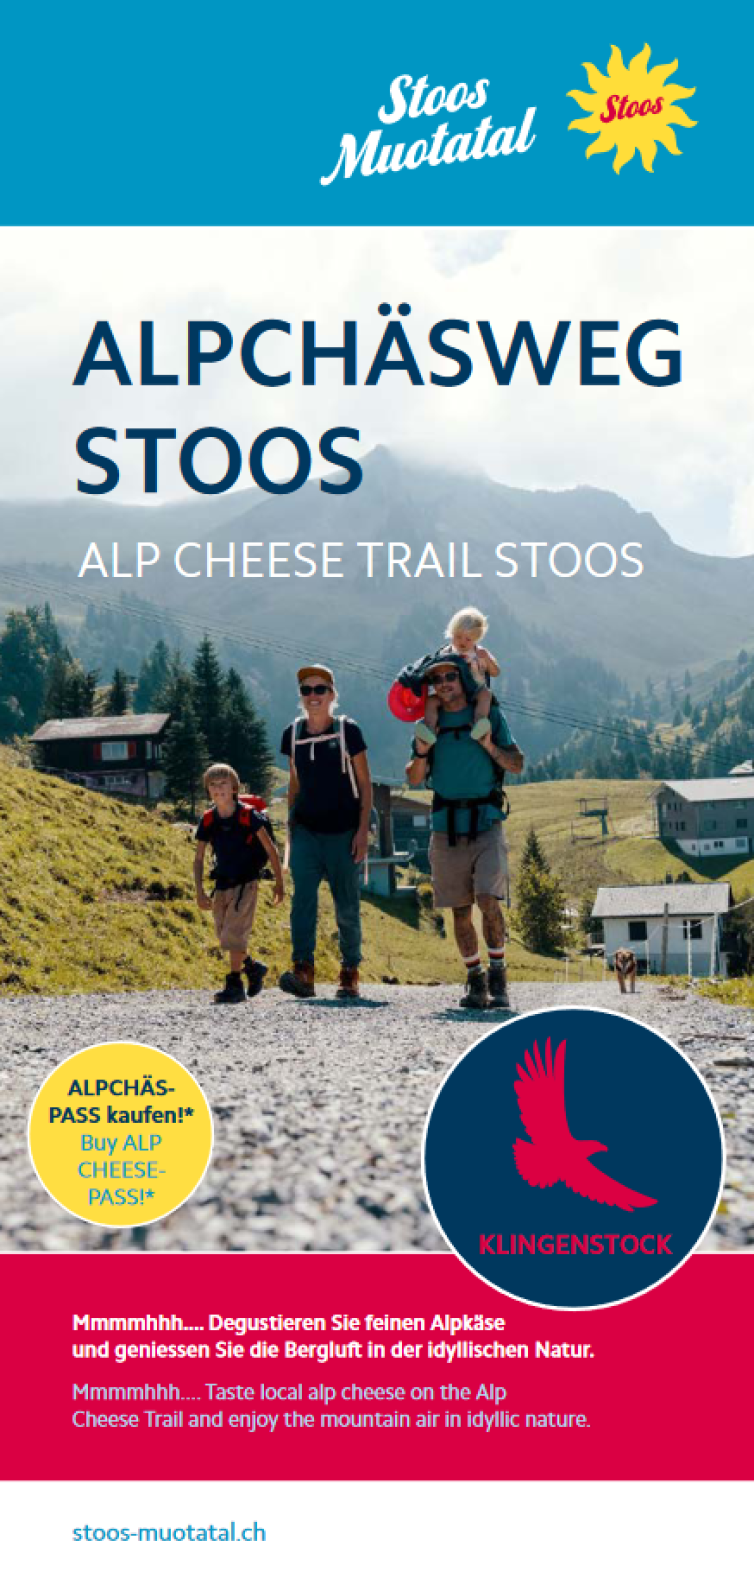 Alp Cheese Trail